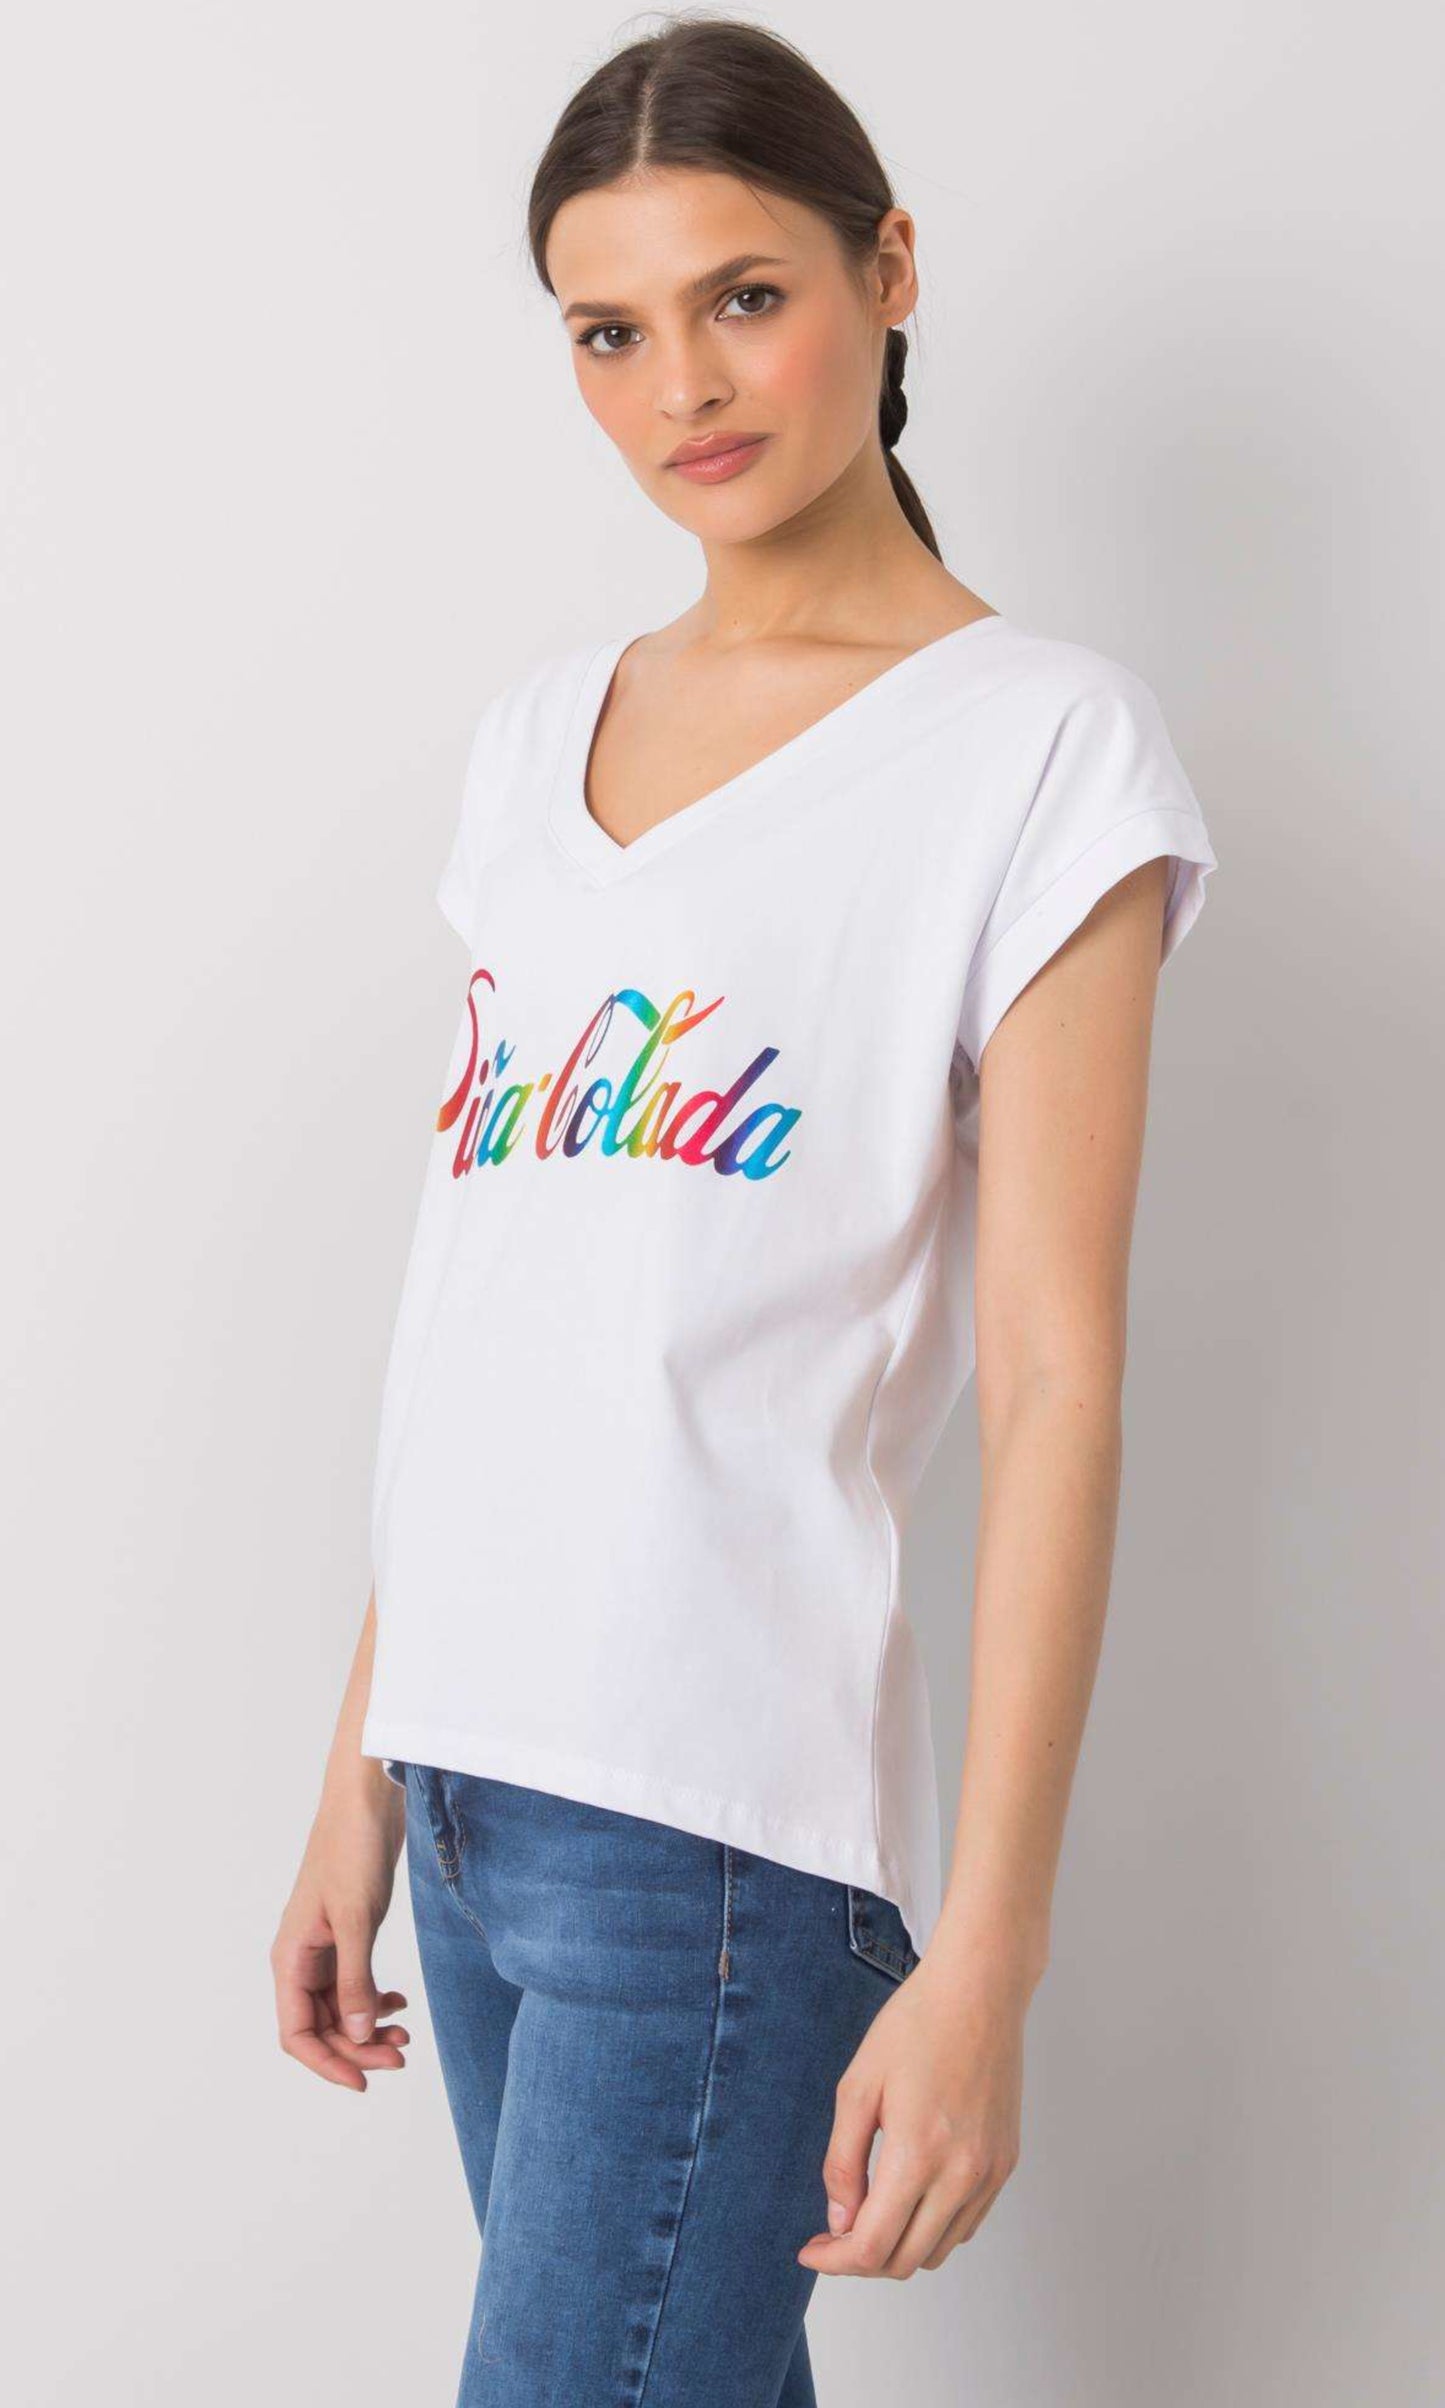 T-shirt Wit Pina Colada